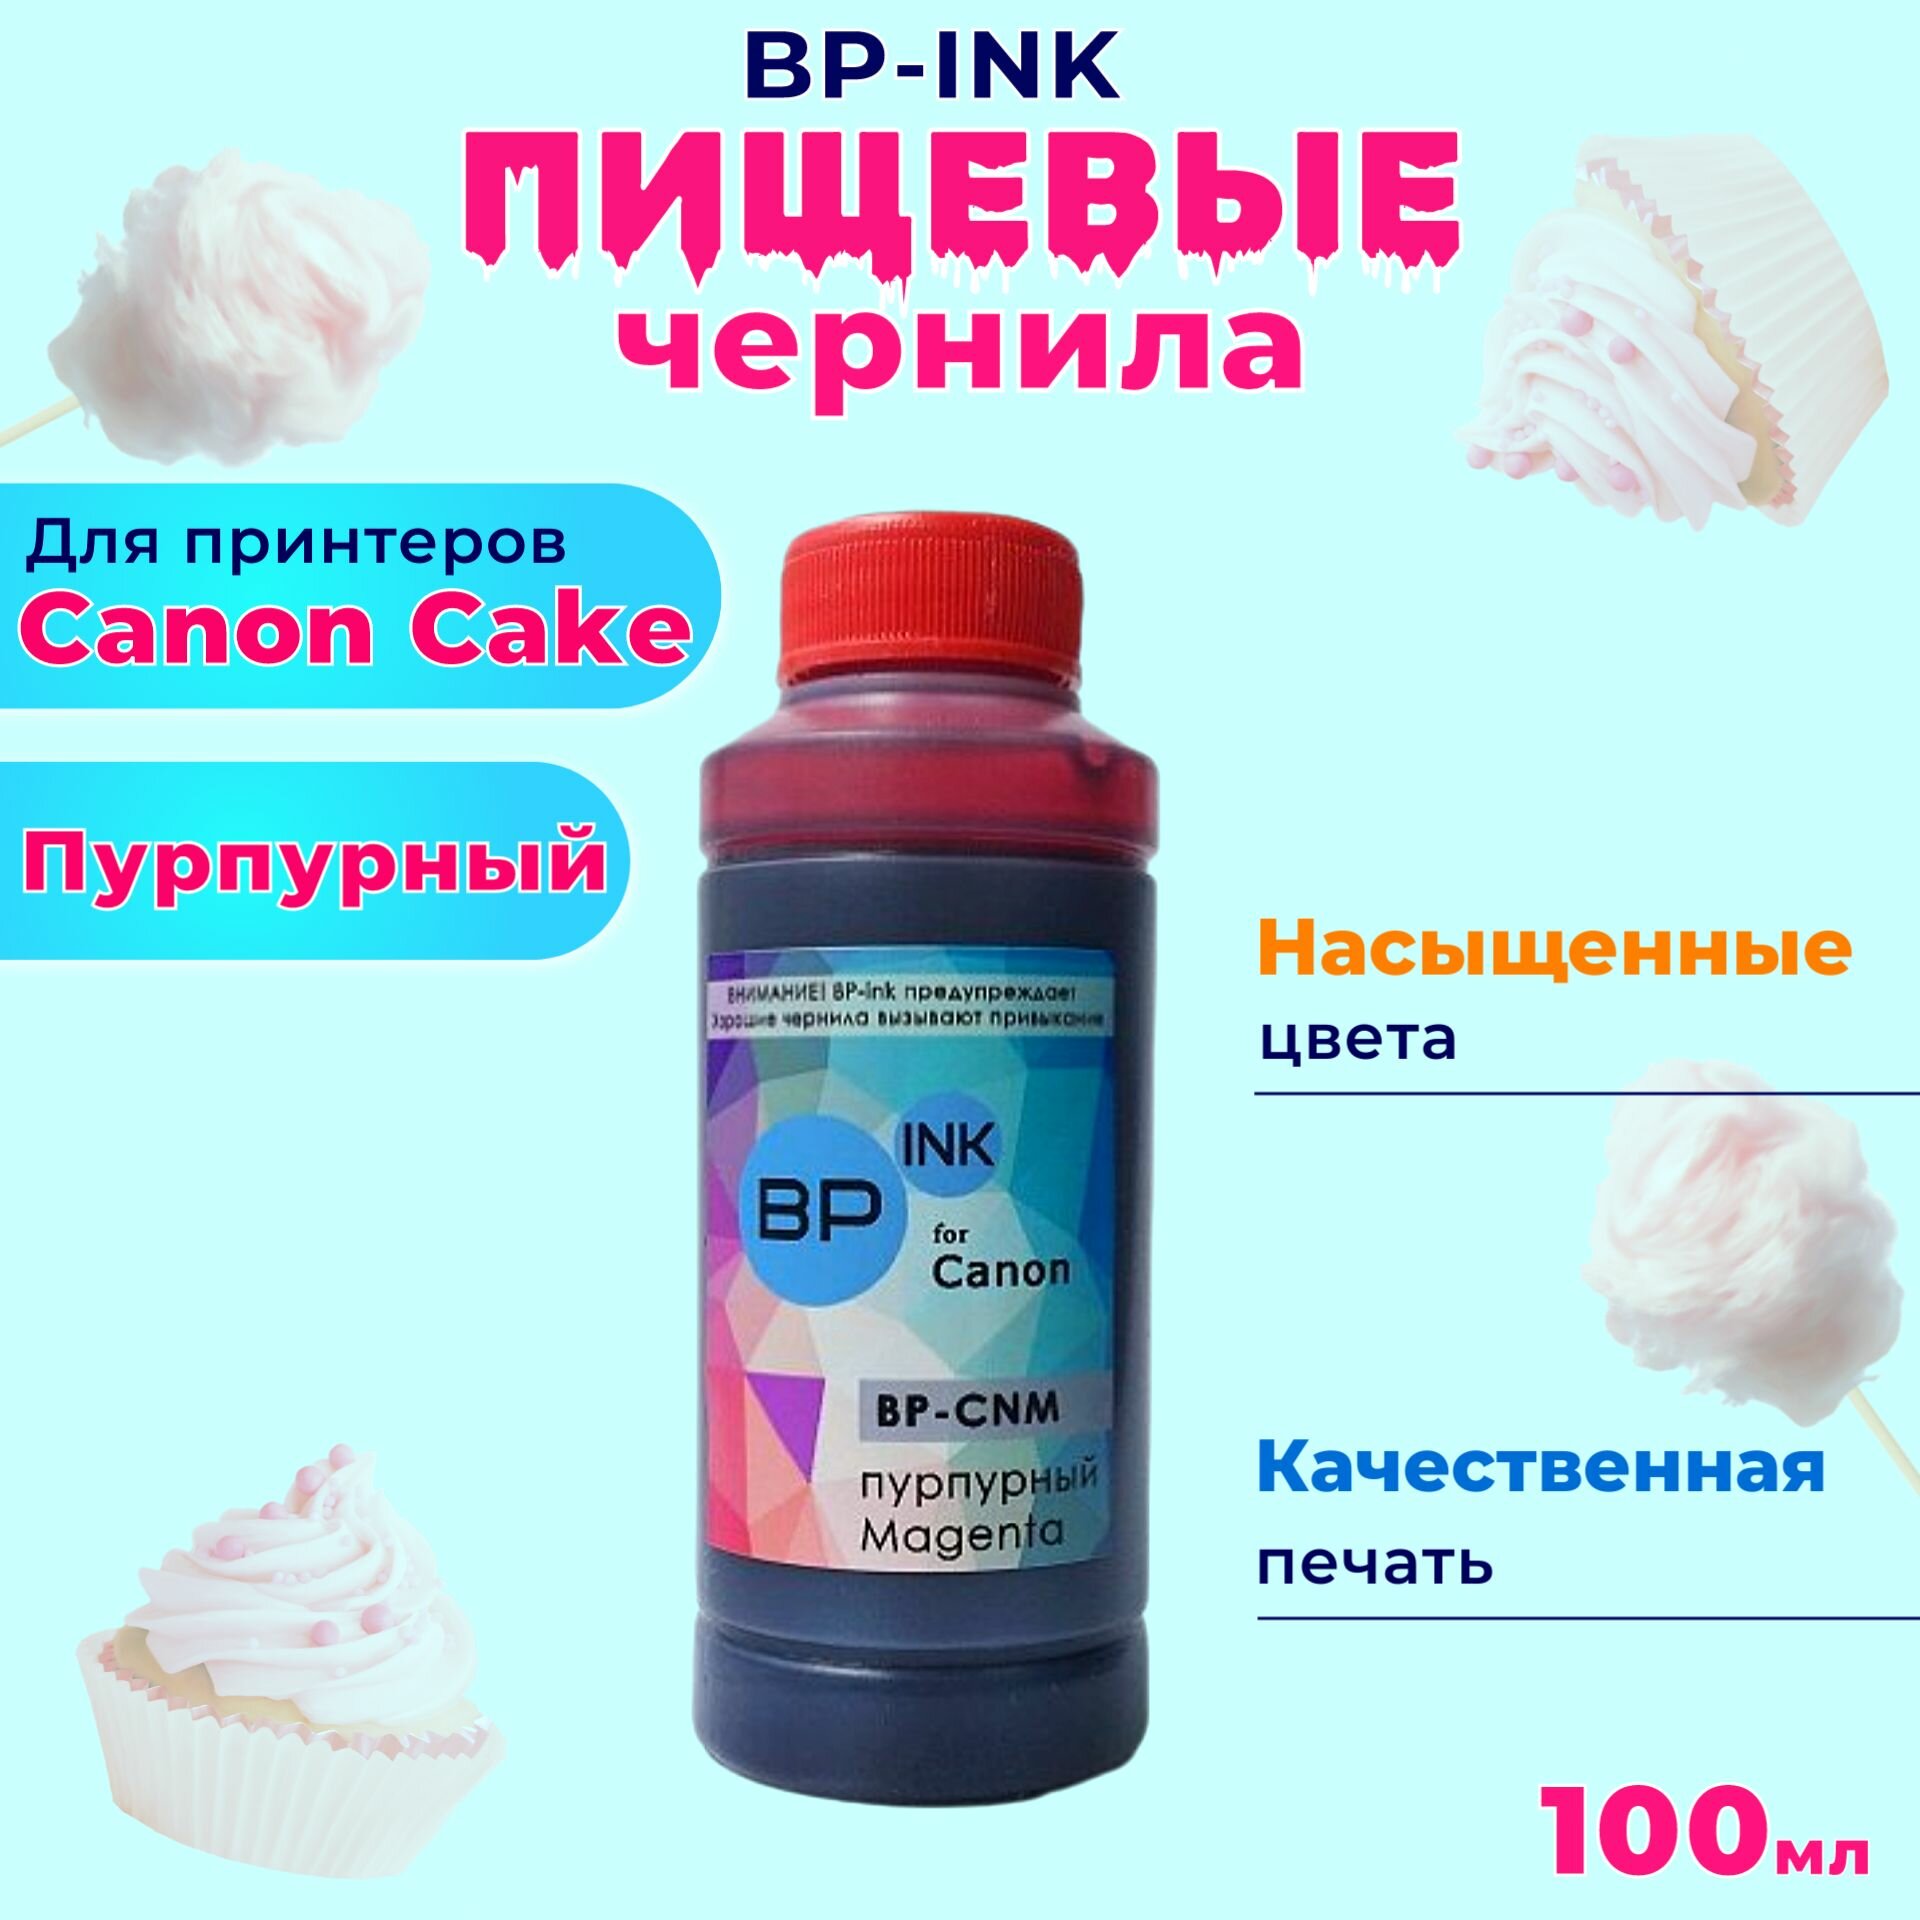 Пищевые съедобные чернила KOPYFORM BP-ink 1х100 мл. Magenta Пурпурный для принтера Canon Cake